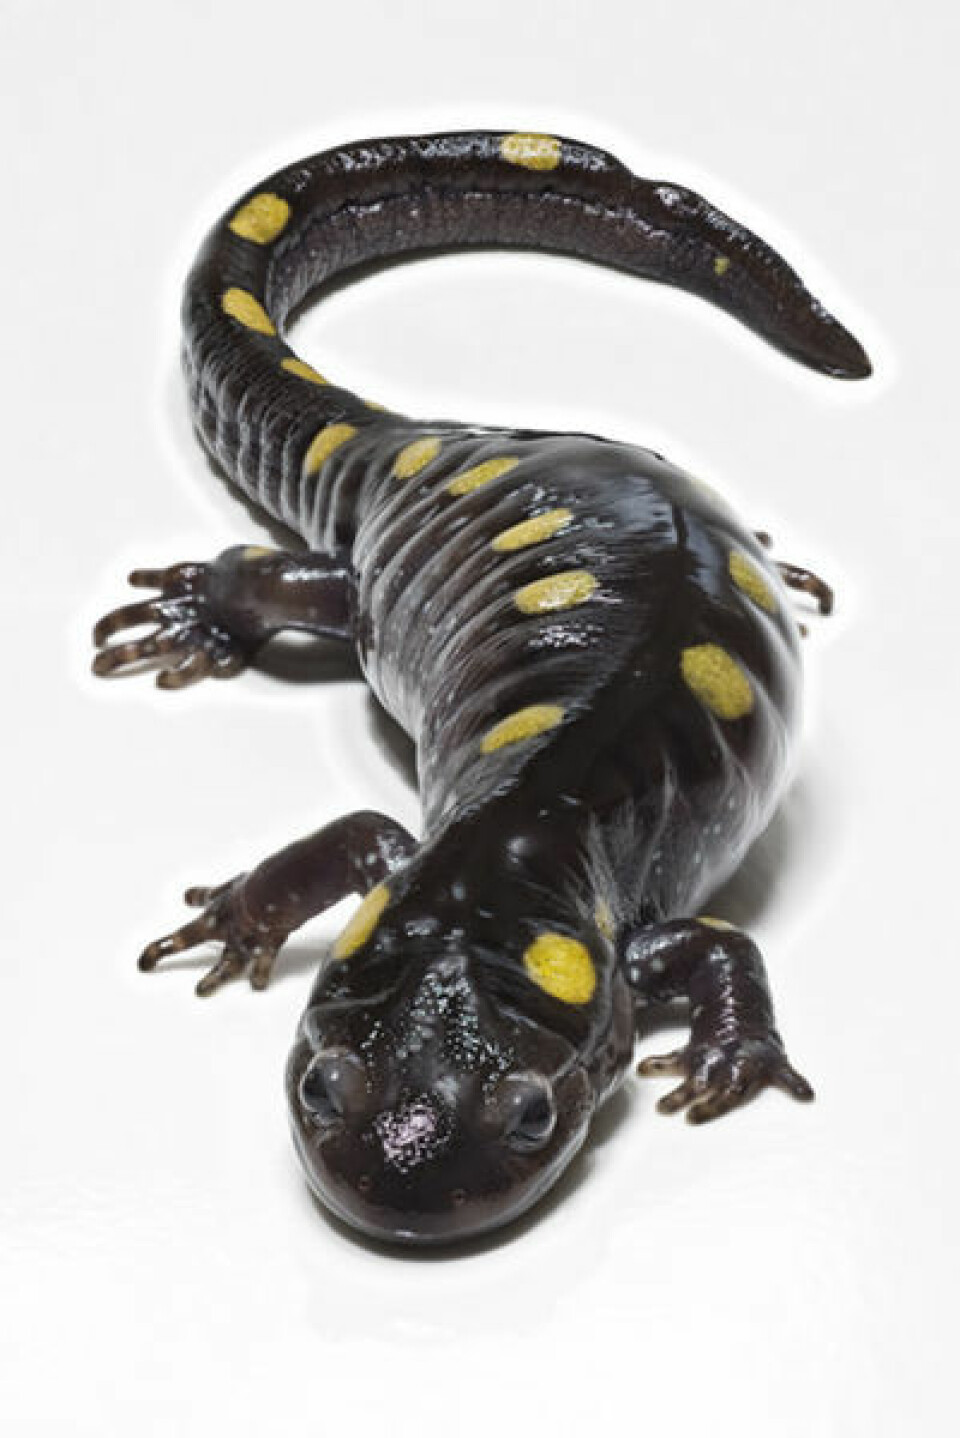 'Salamanderen har brukt sine omgivelser til å øke sin egen overlevelsesevne'